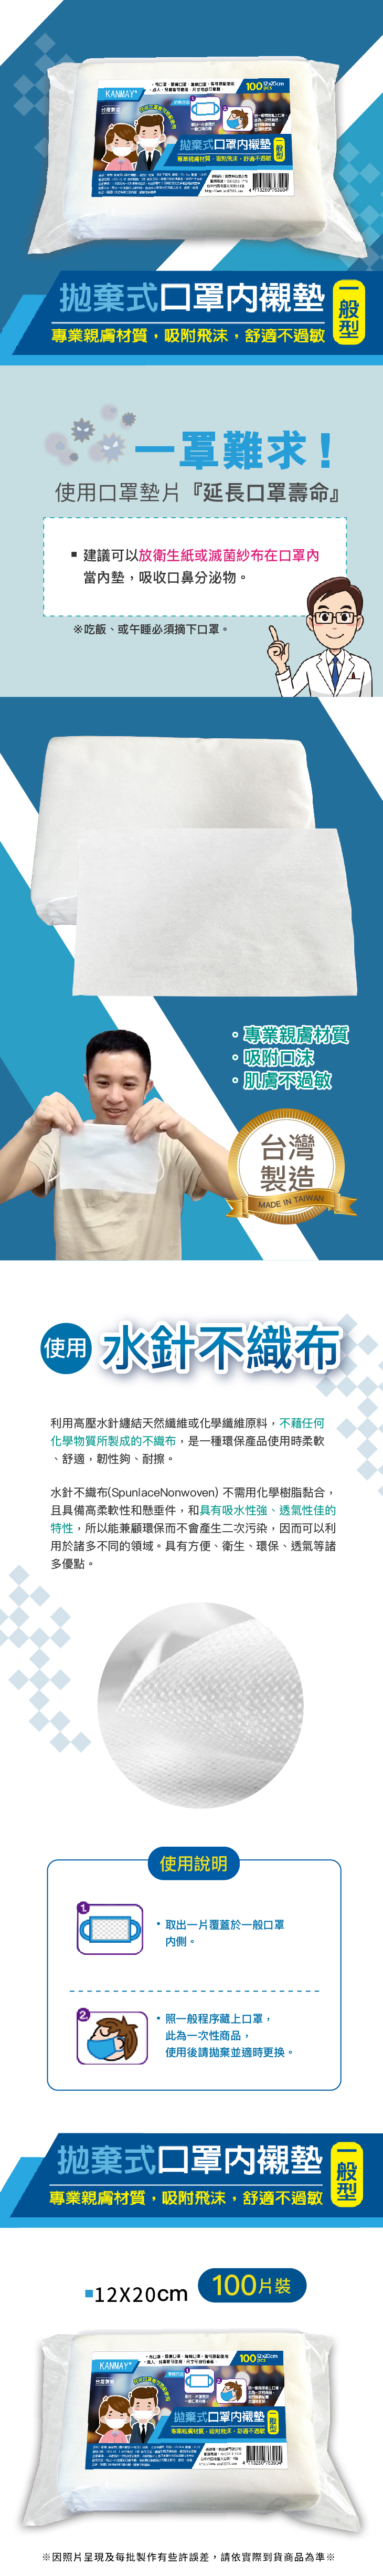 台灣製拋棄式口罩內襯墊(100片/包)